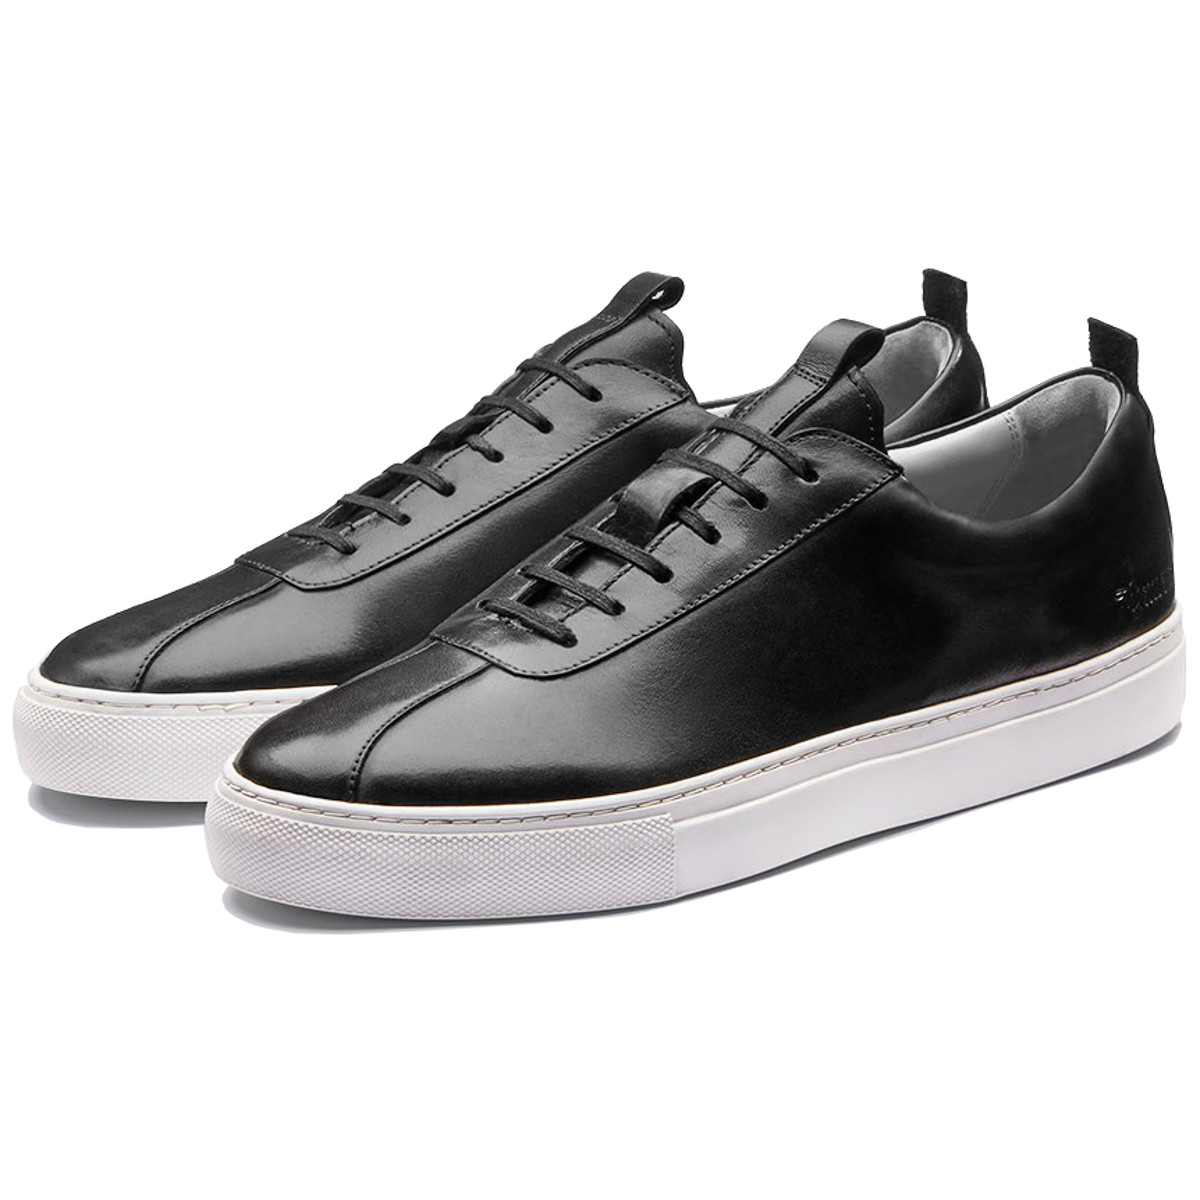 Grenson Sneaker 1 Black - Pediwear Footwear